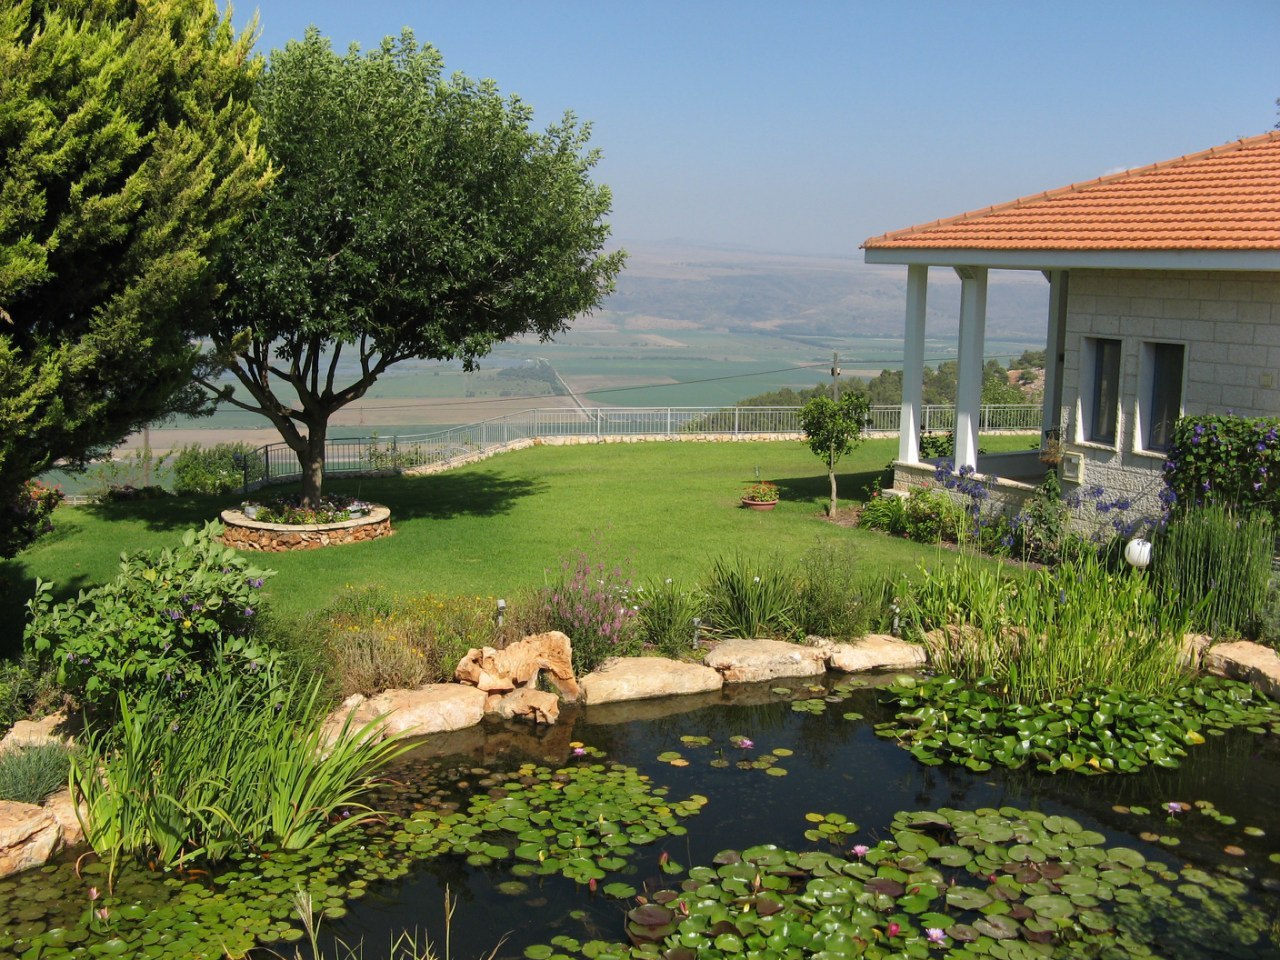 Безмятежный побег: изучение продажи загородных домов в Верхней Галилее